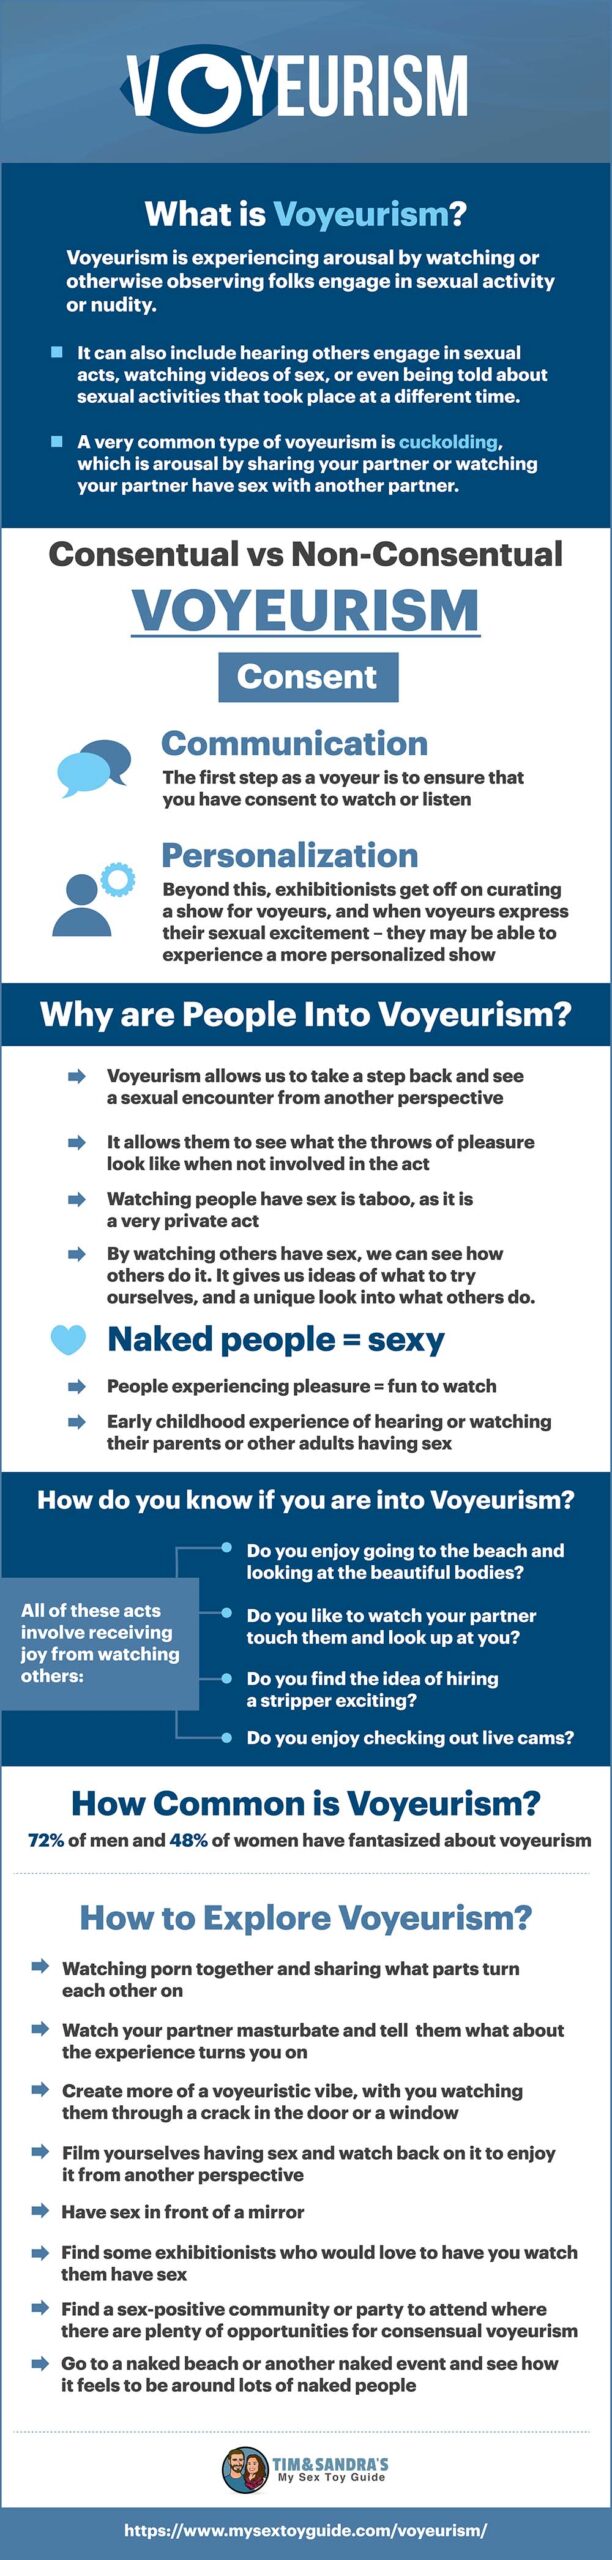 Voyeurism Infographic